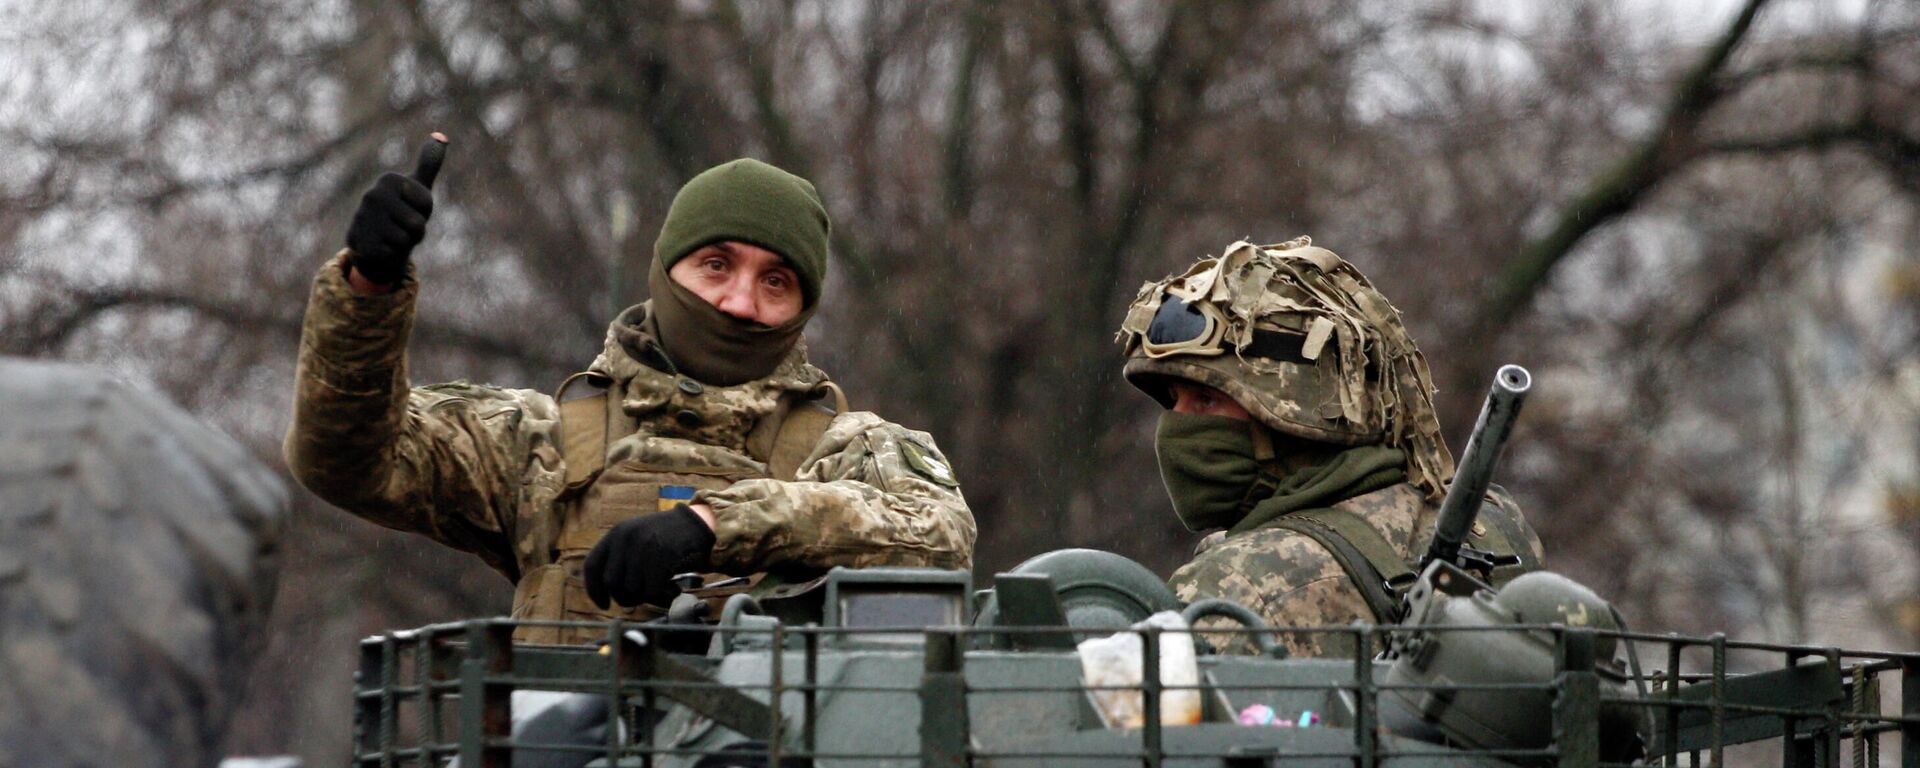 Militares ucranianos são vistos em um veículo antes de um ataque à região de Lugansk, em 26 de fevereiro de 2022 - Sputnik Brasil, 1920, 16.03.2022